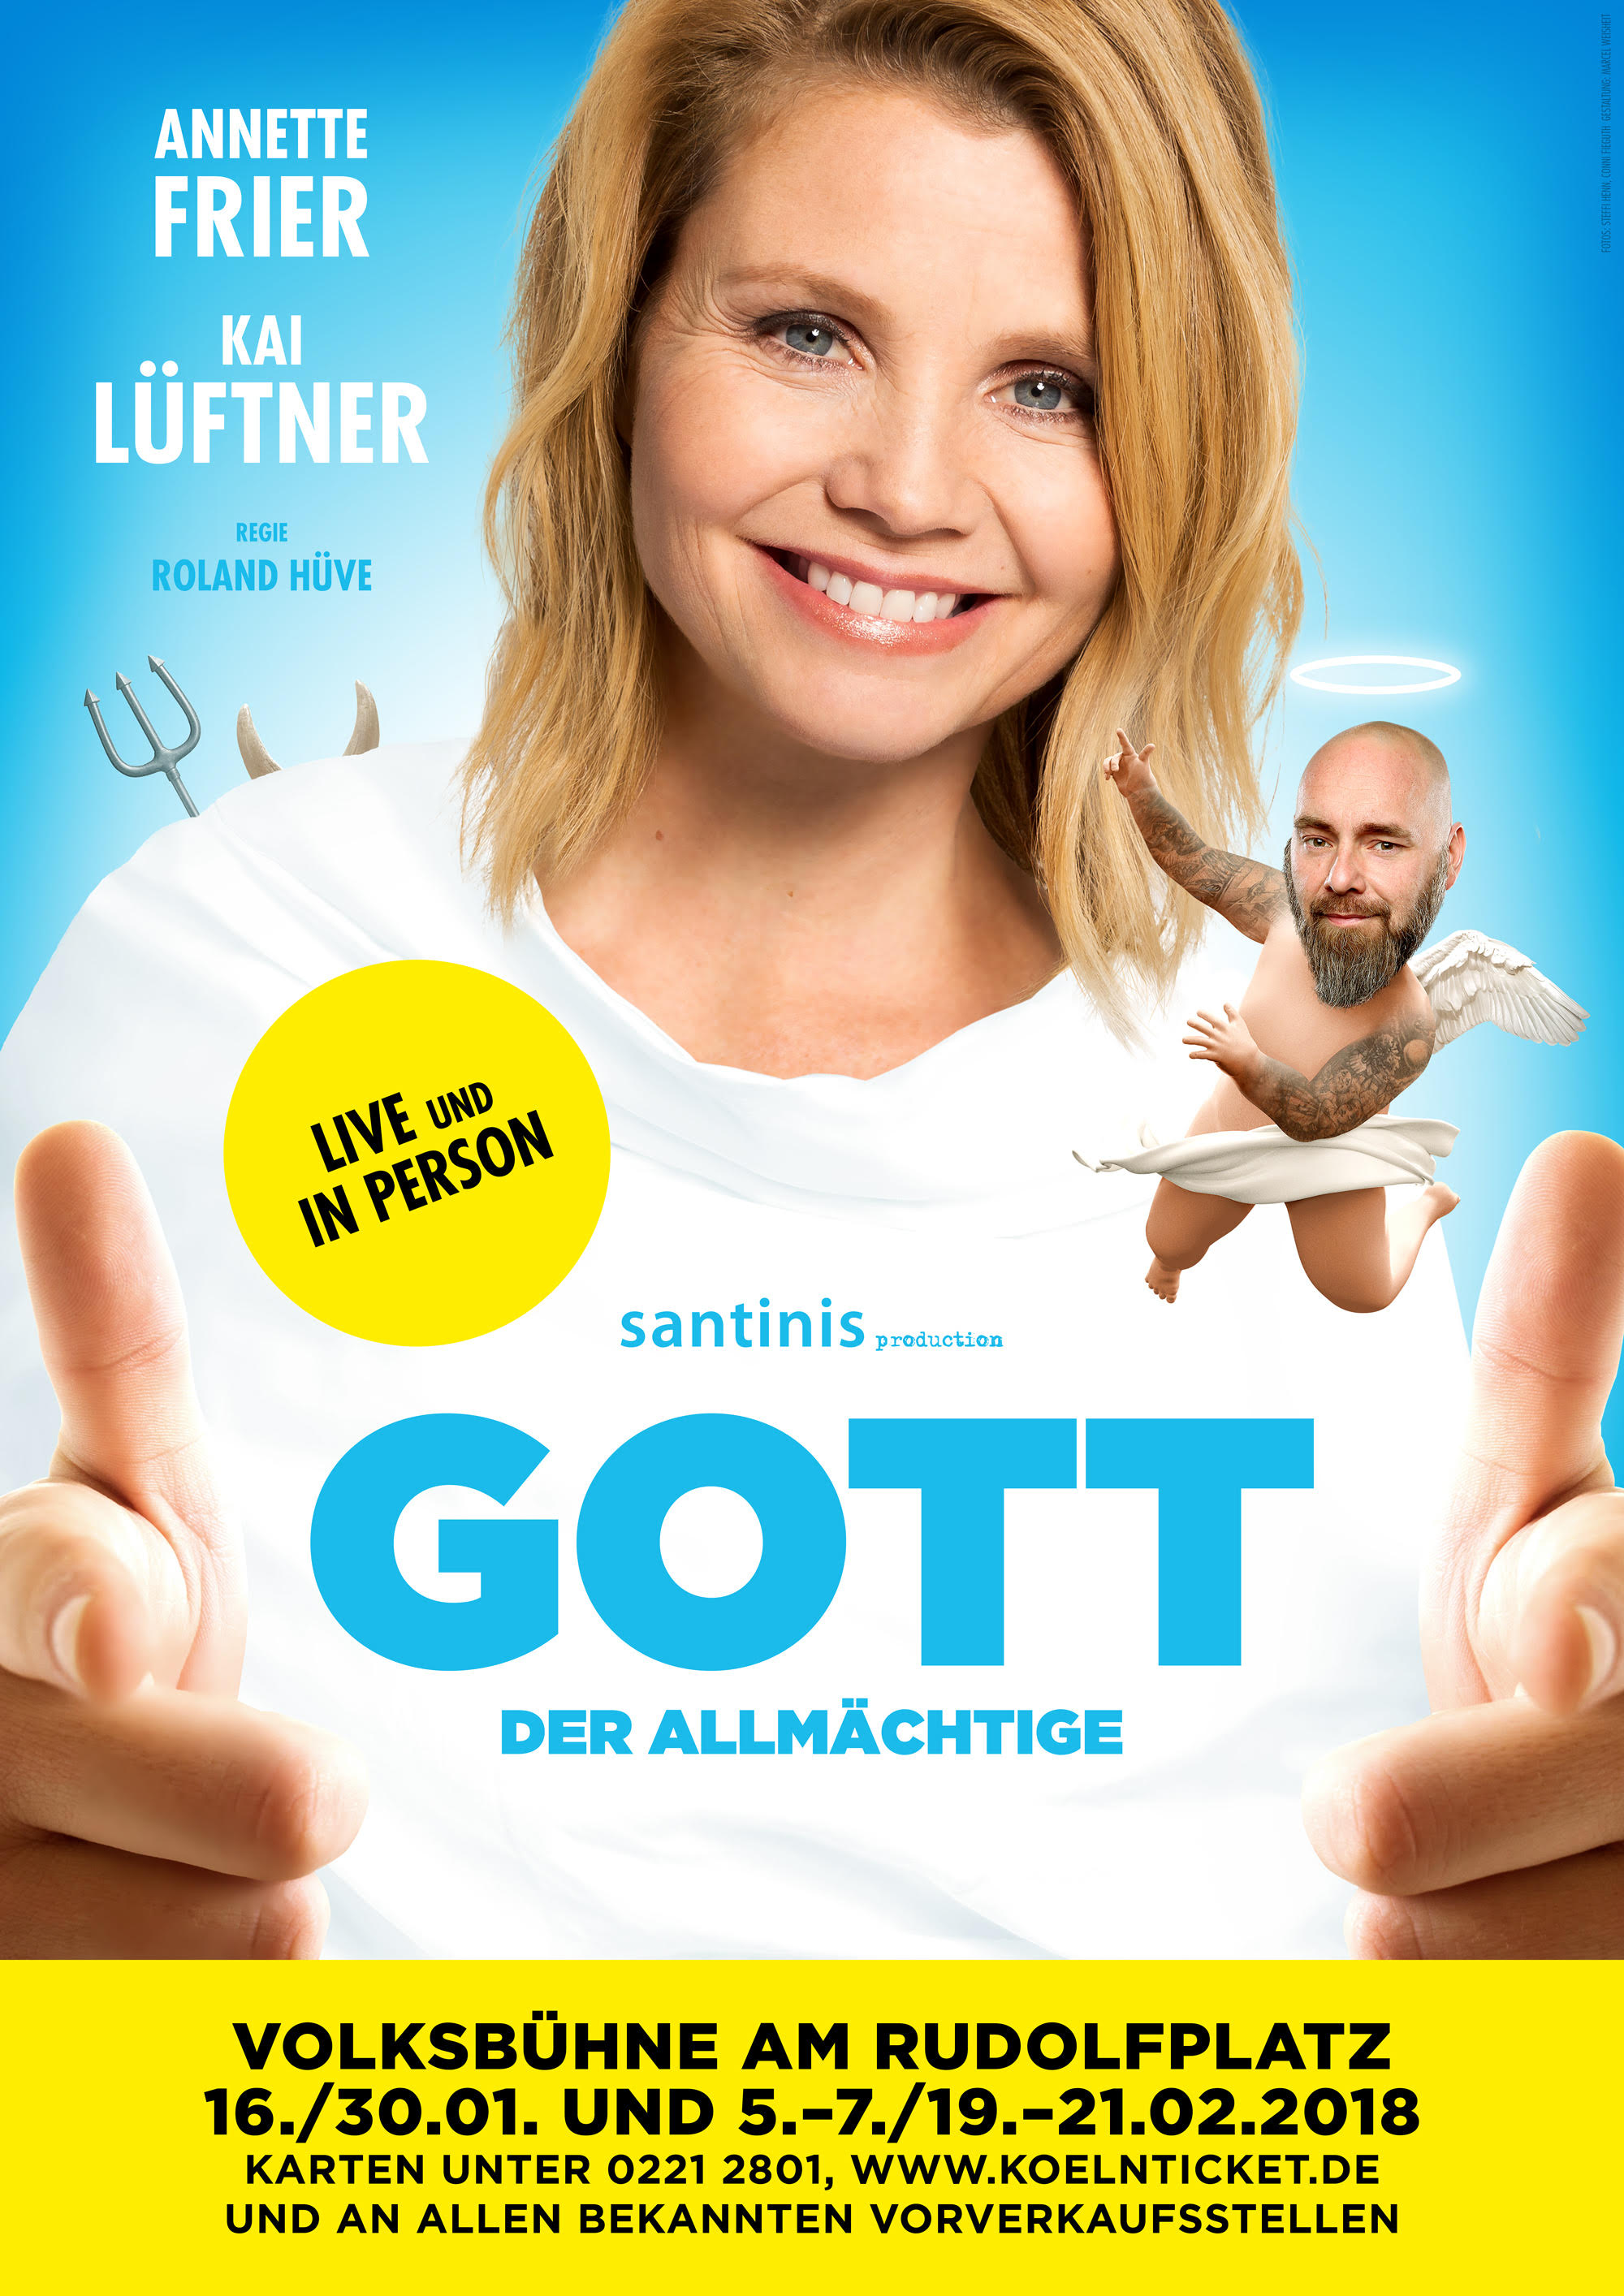 Annette Frier ist "GOTT DER ALLMÄCHTIGE" mit Annette Frier und Kai Lüftner  - Kai Lüftner